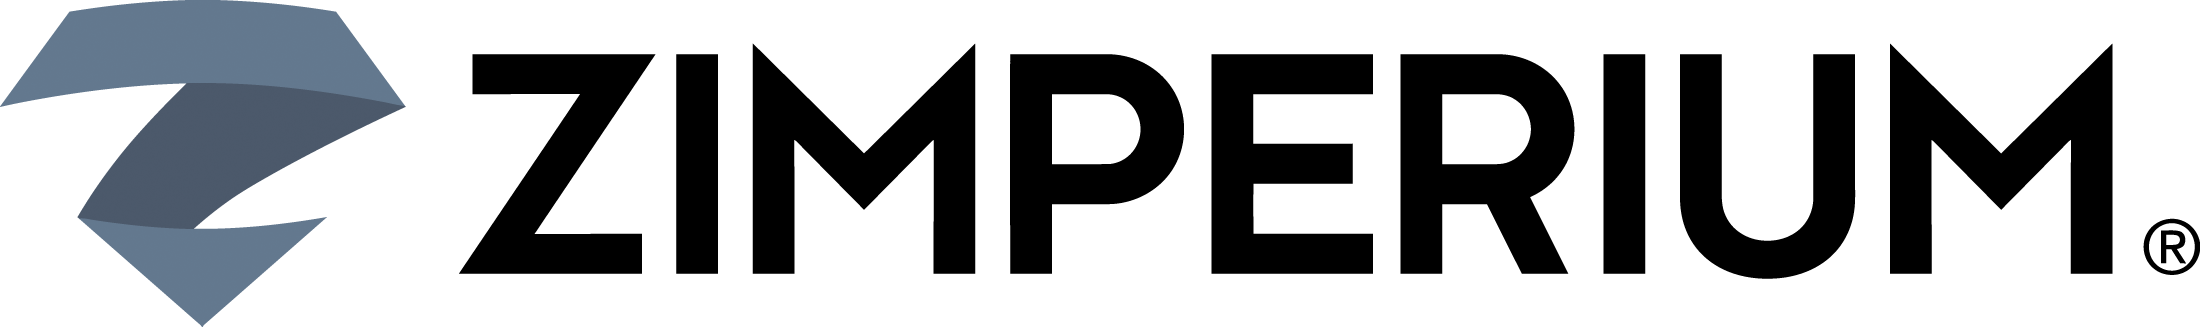 ZIMPERIUM-logo_light_bg